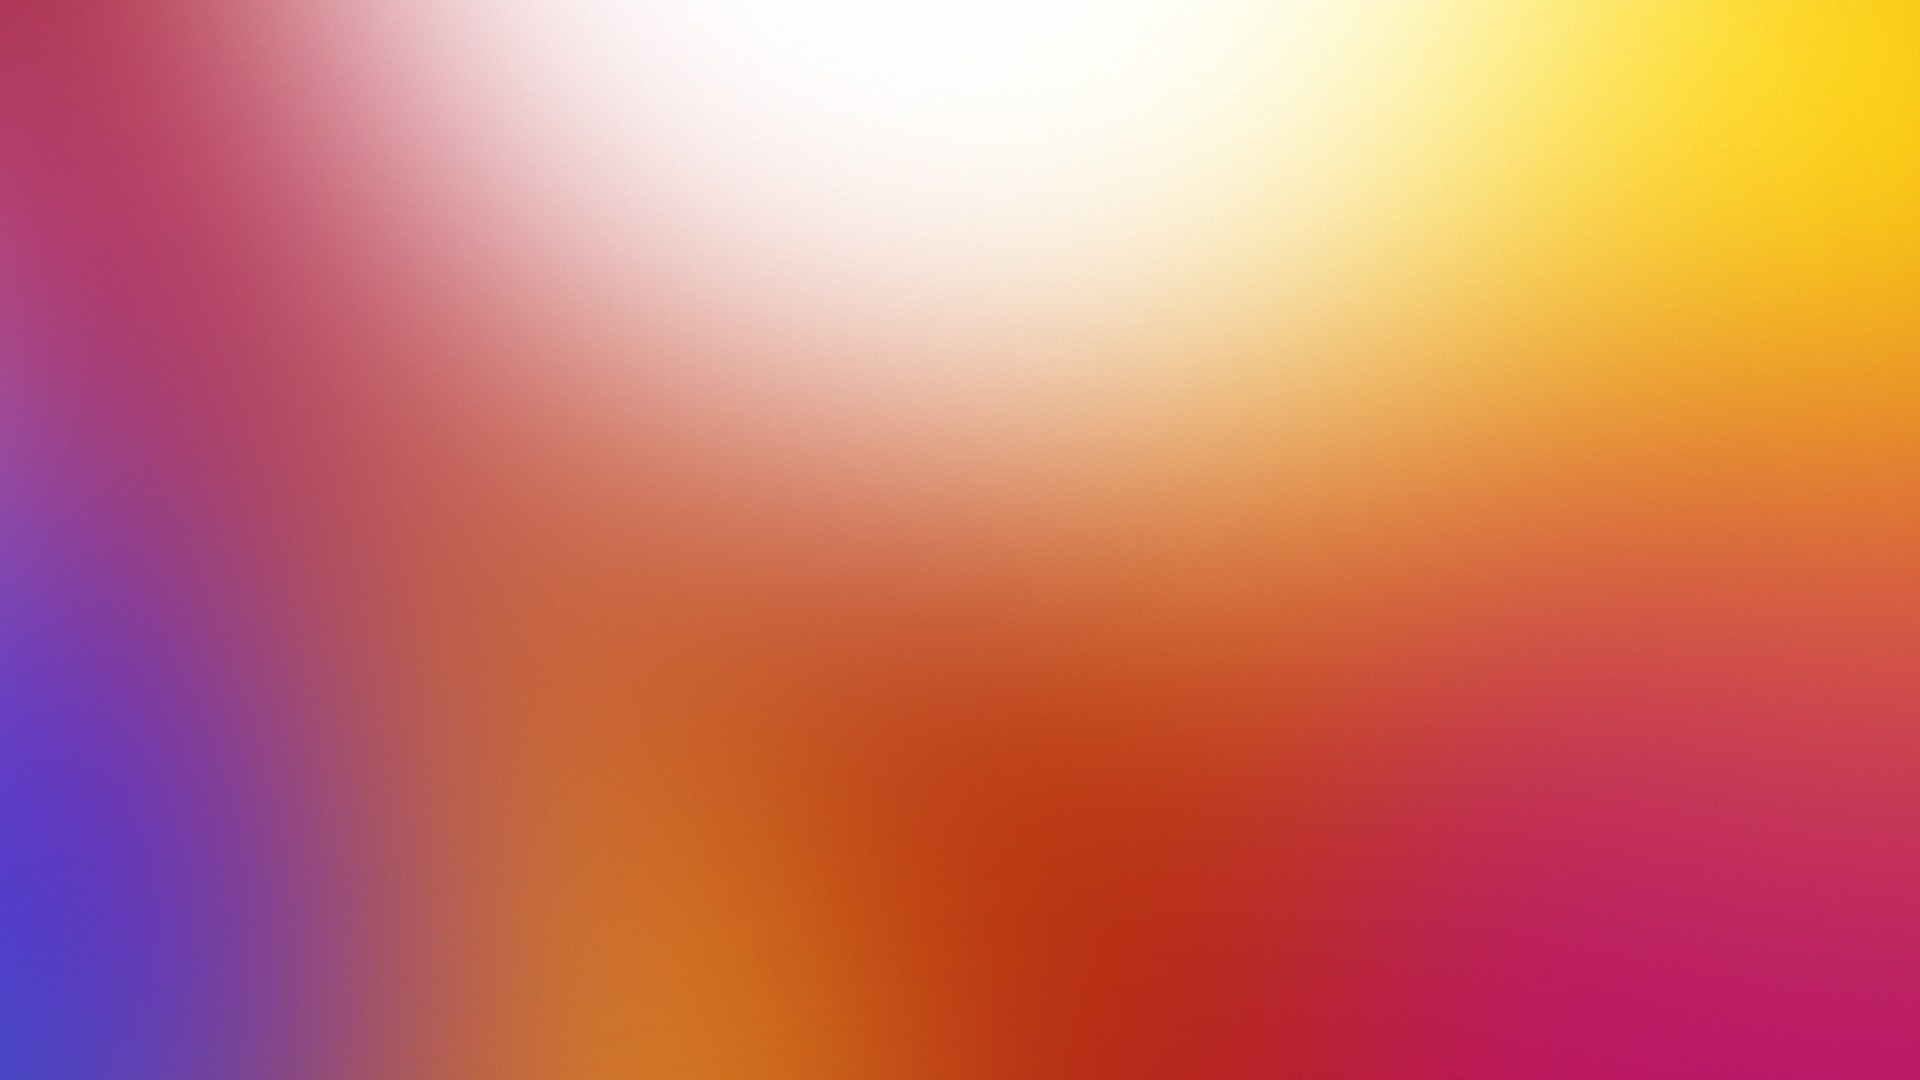 レノボk5ノート壁紙hd,オレンジ,黄,ピンク,紫の,赤